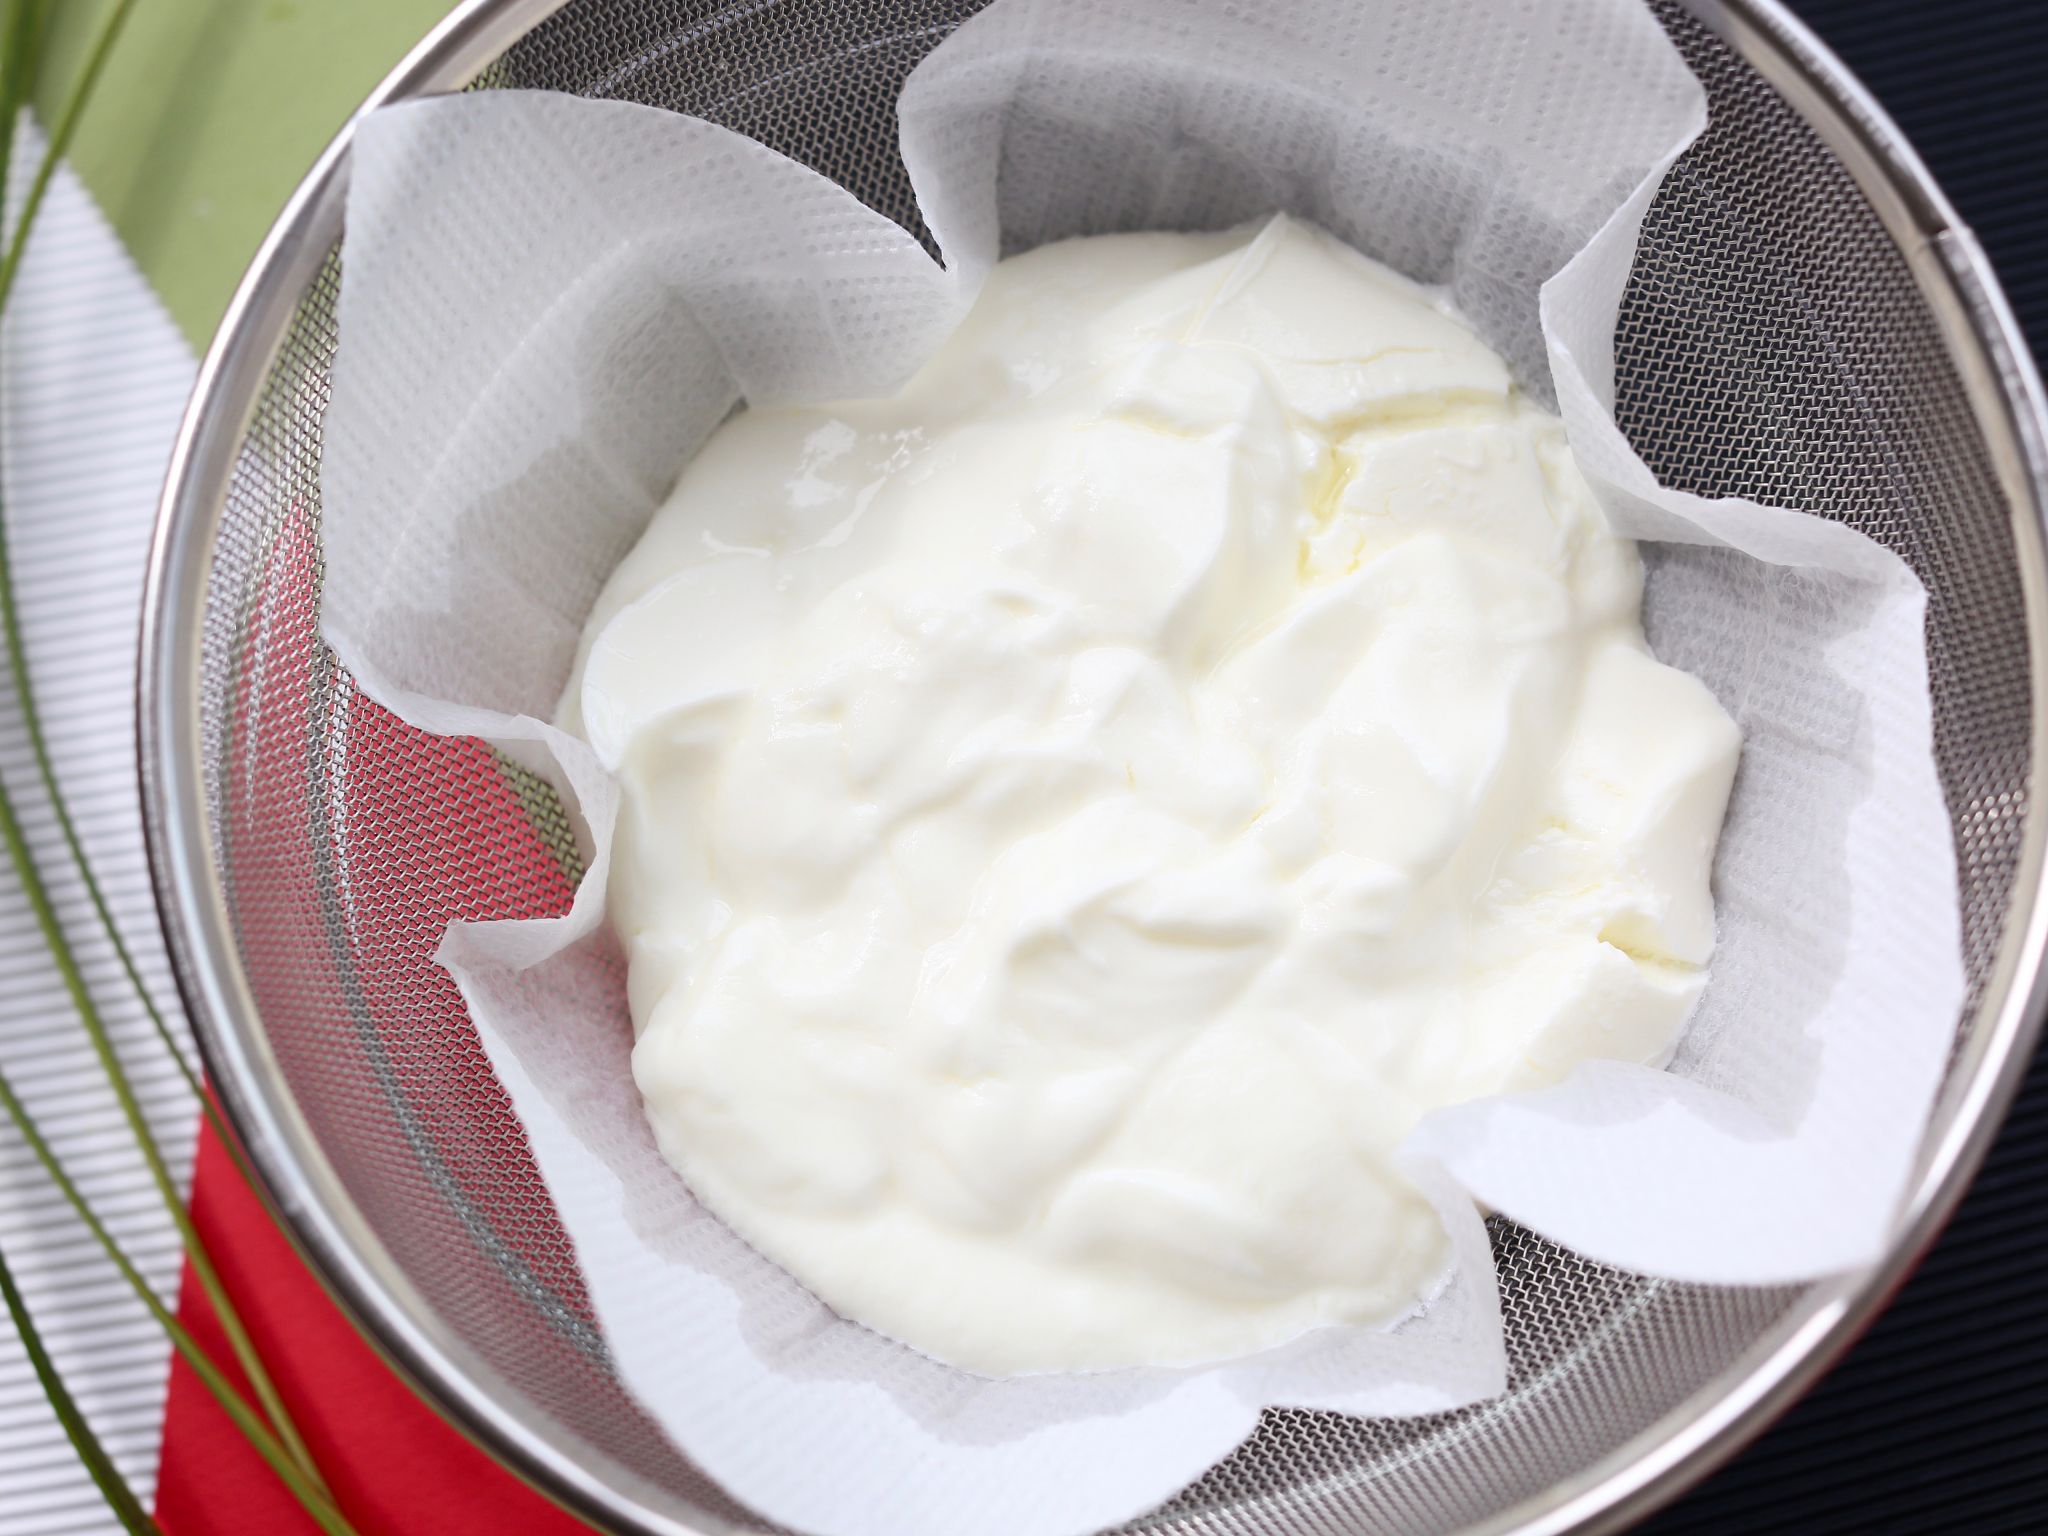 水切りヨーグルトの作り方 水切りする方法2パターンとおすすめレシピ やまでら くみこ のレシピ